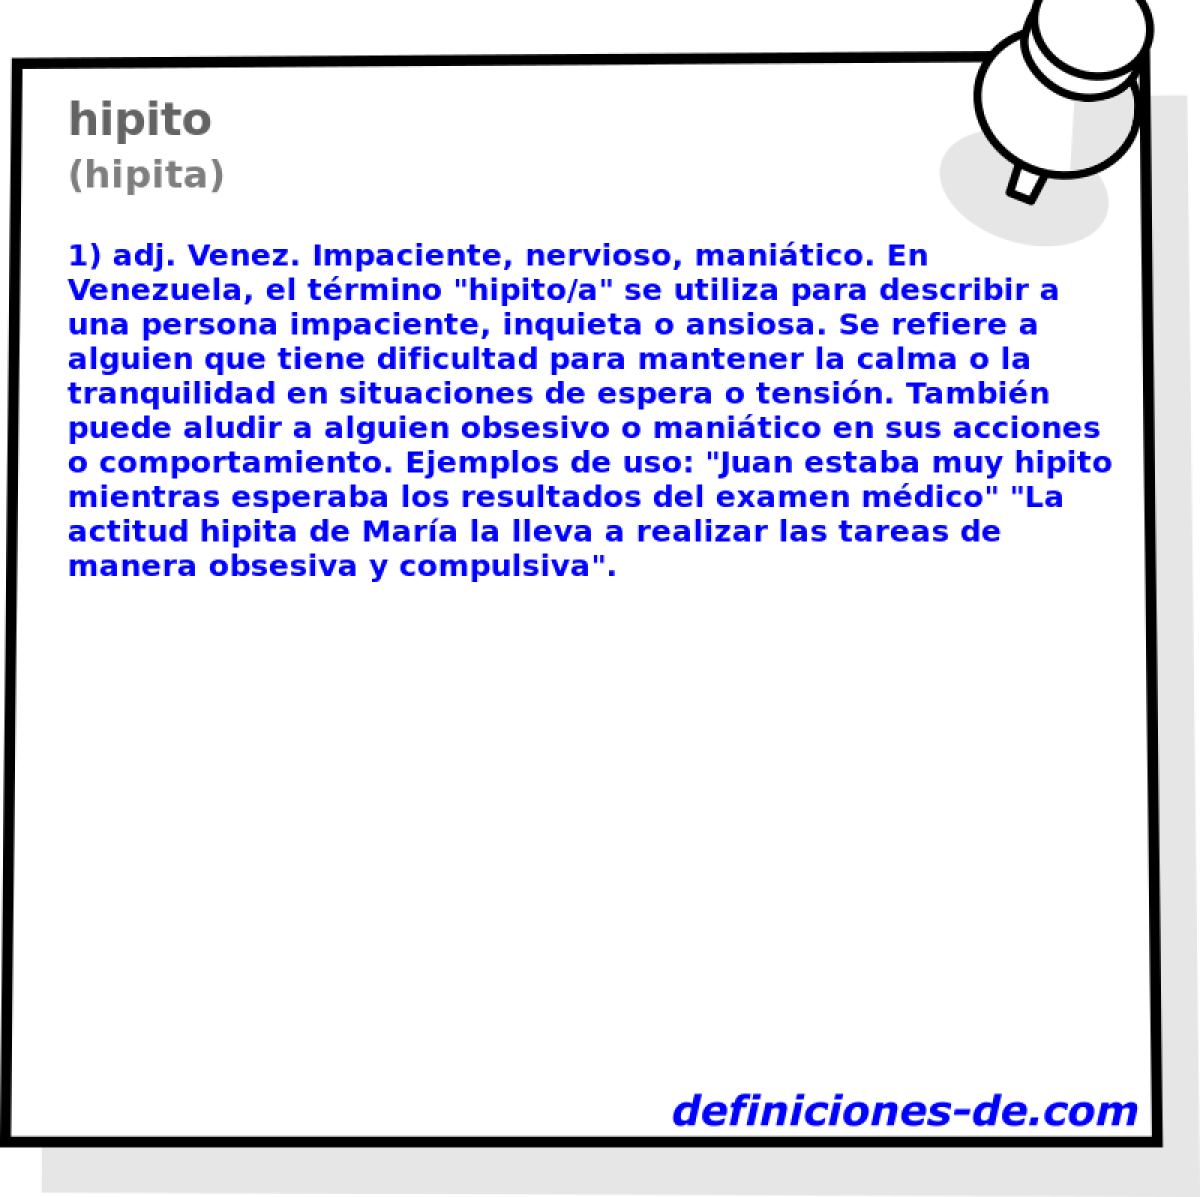 hipito (hipita)